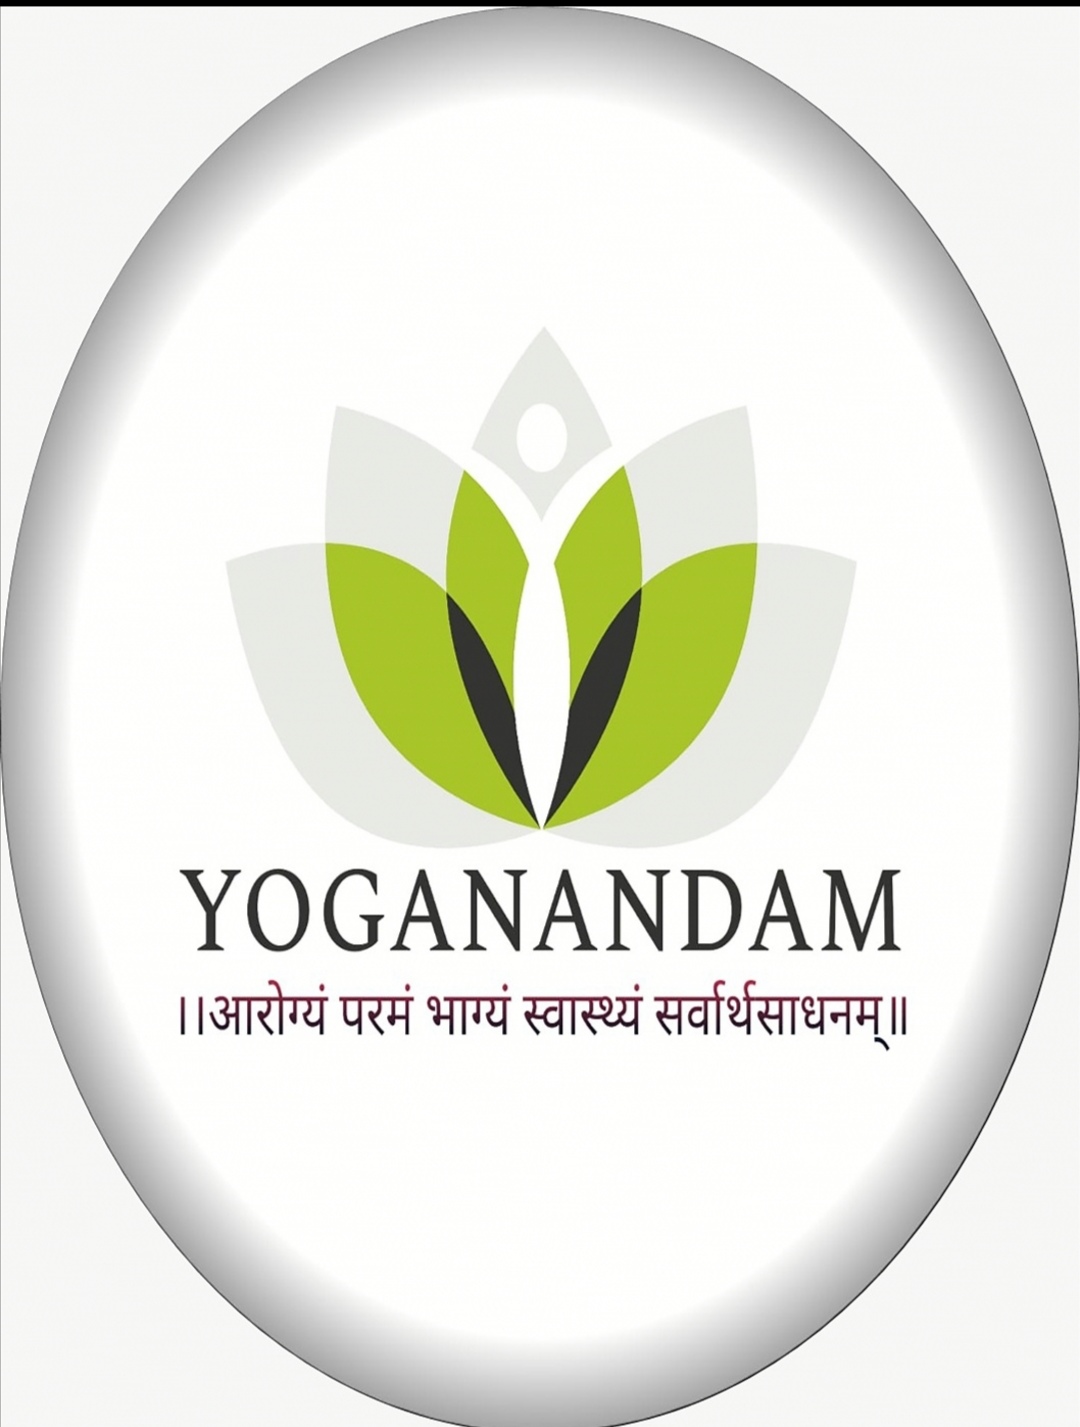 Yoganandam yoga and naturopathy center  